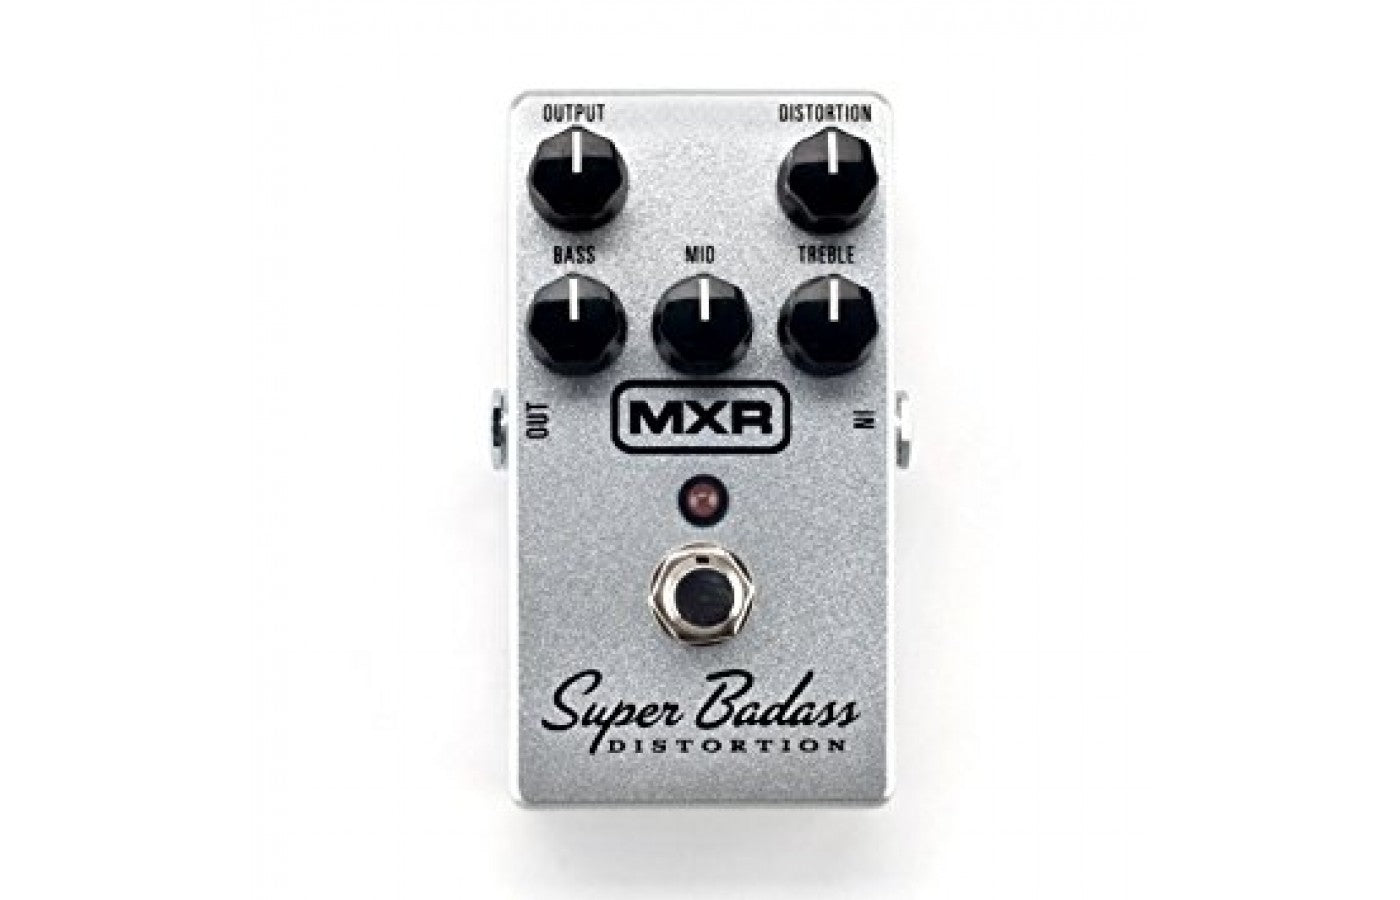 MXR Super Badass Distortion Guitar Effects Pedal